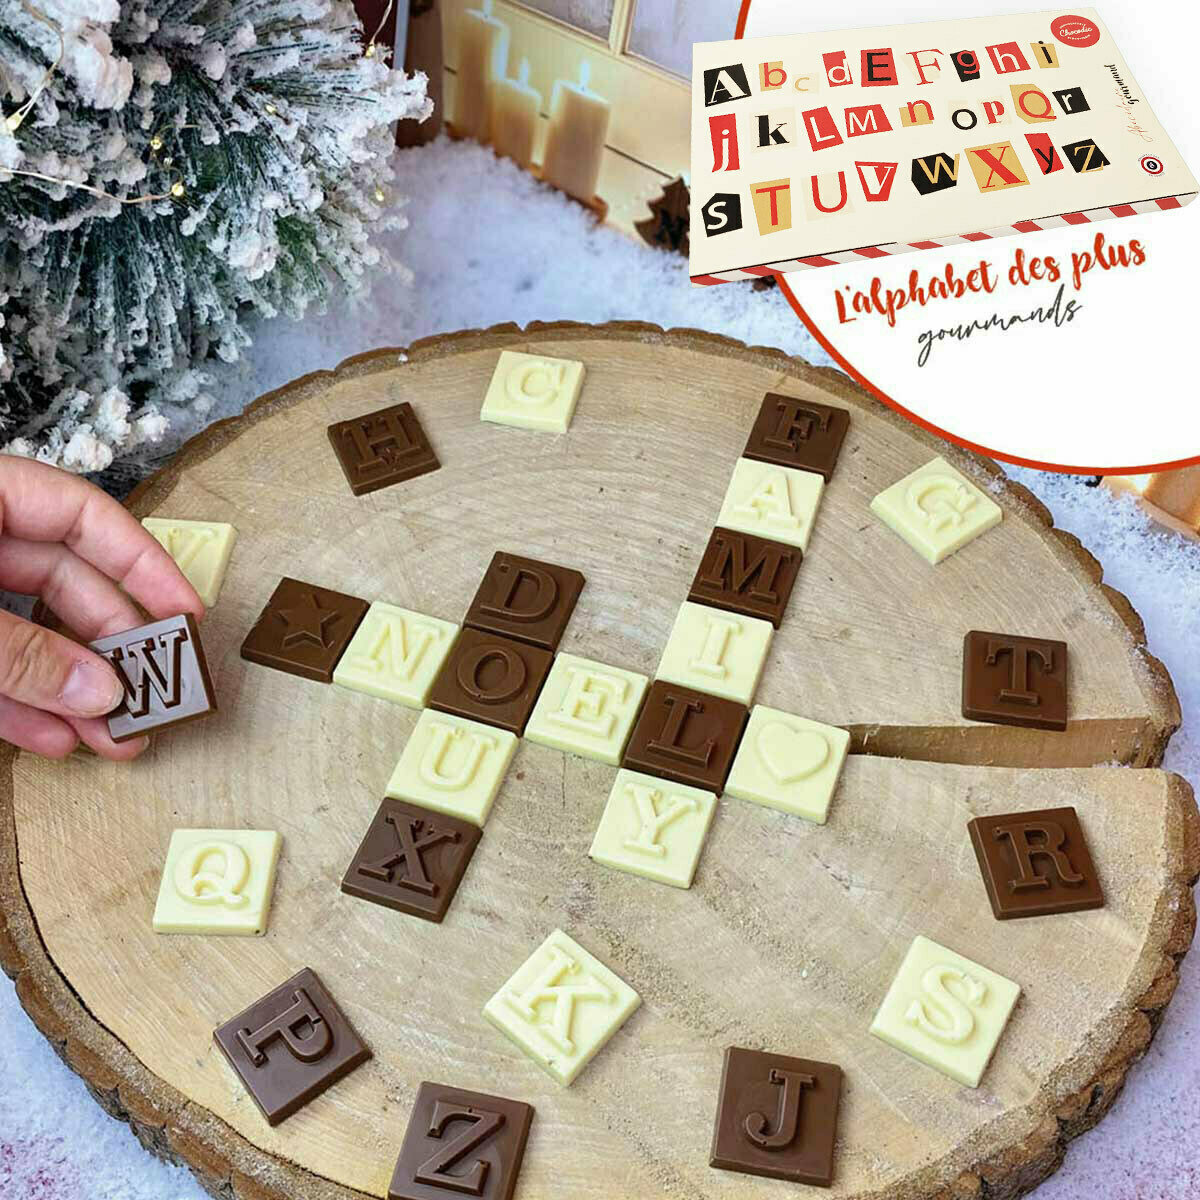 Coffret cadeau de Noël Manette de Jeu en Chocolat Fabrication Artisanale